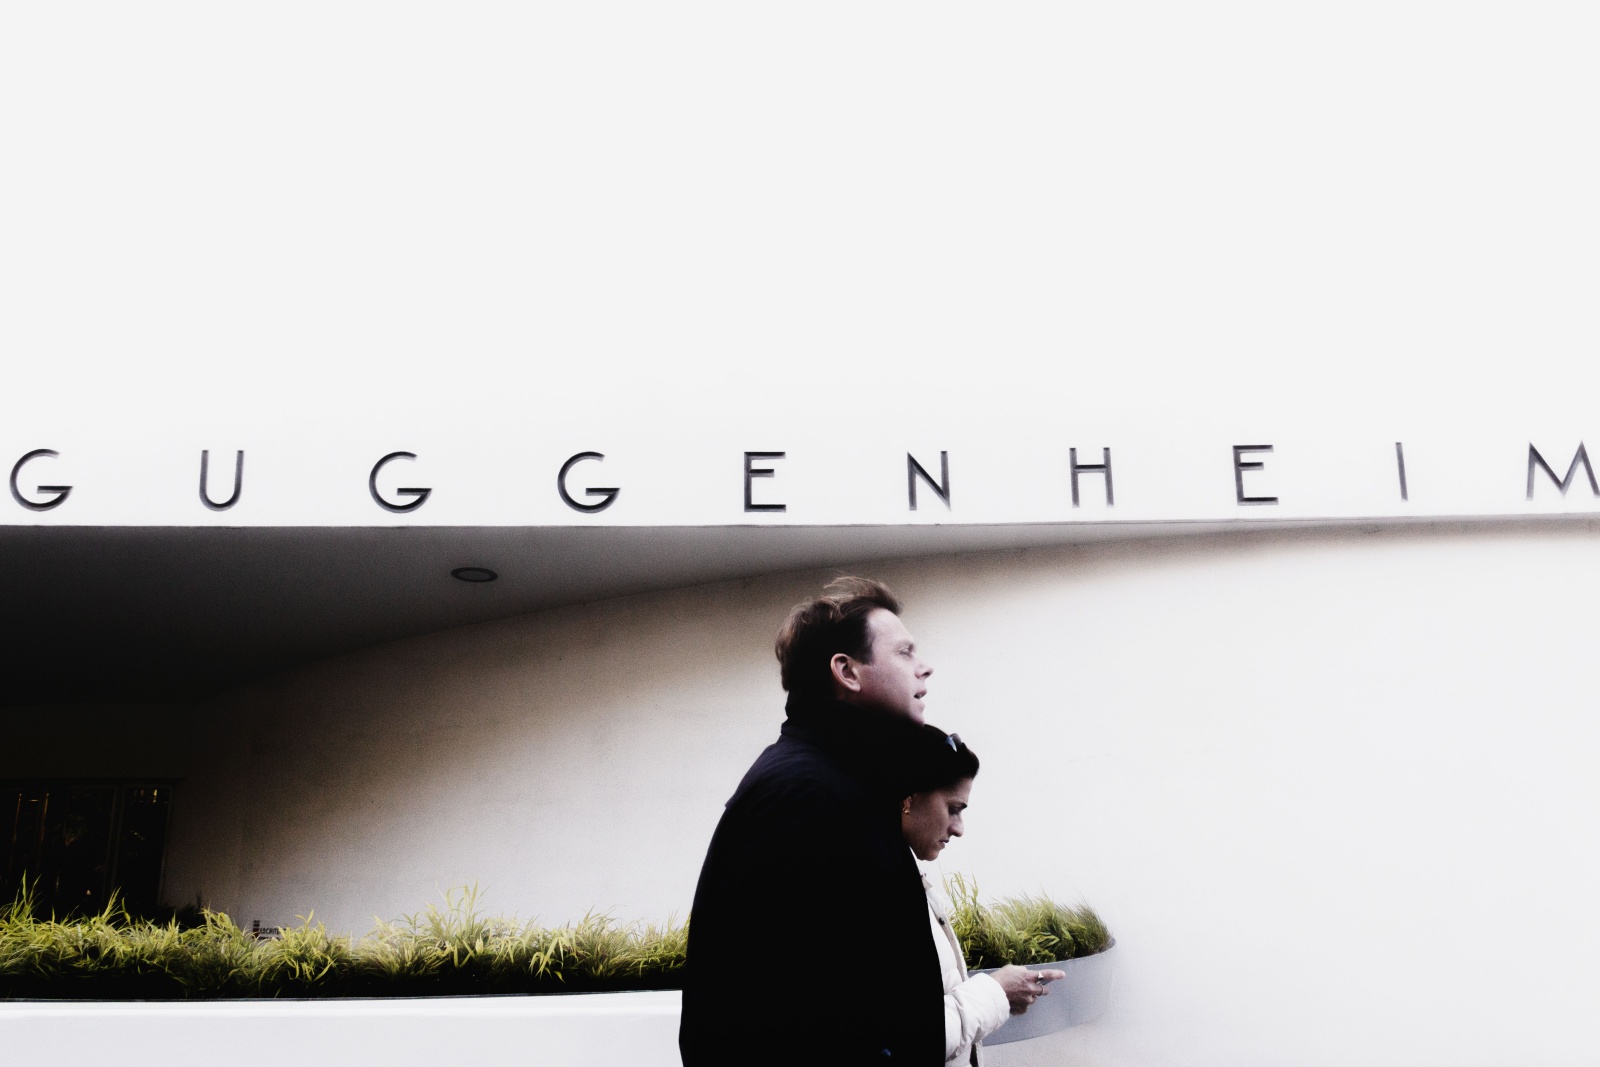 NEW YORK - The Guggenheim Museum